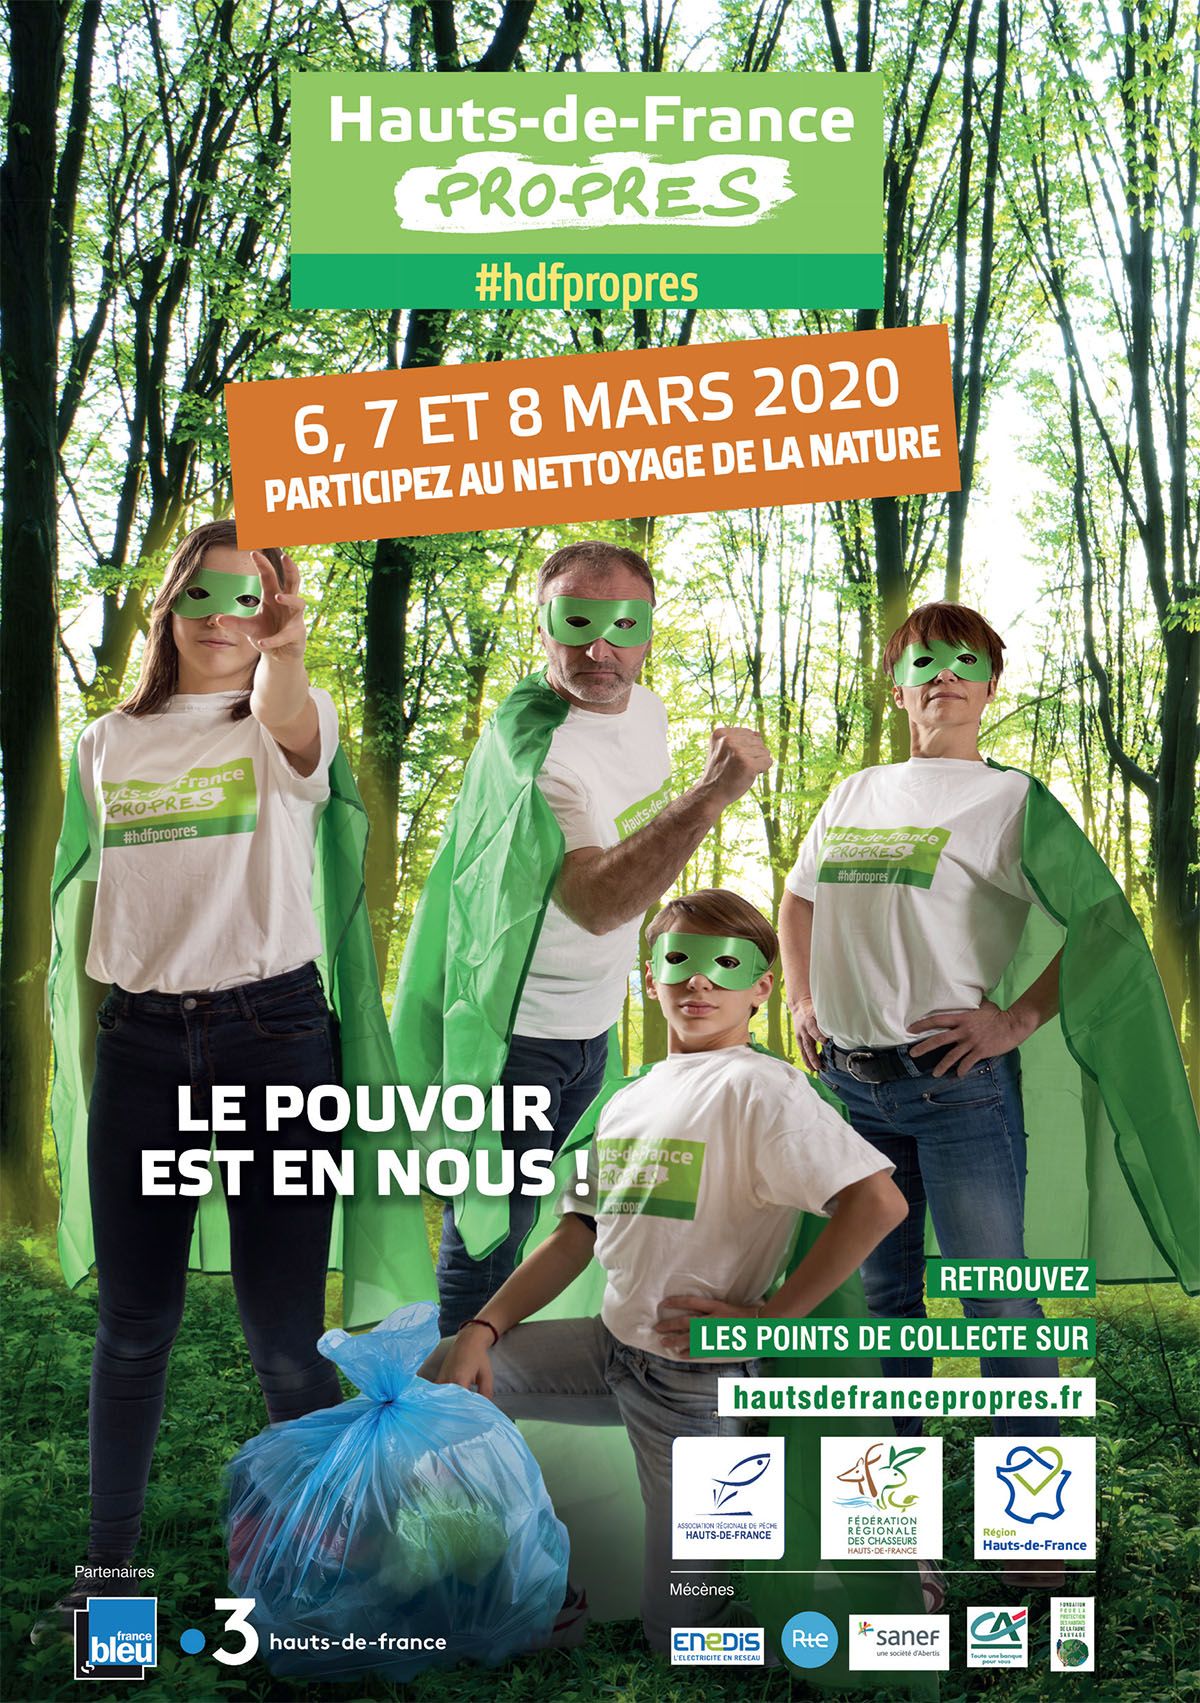 Hauts-de-France propres 2020